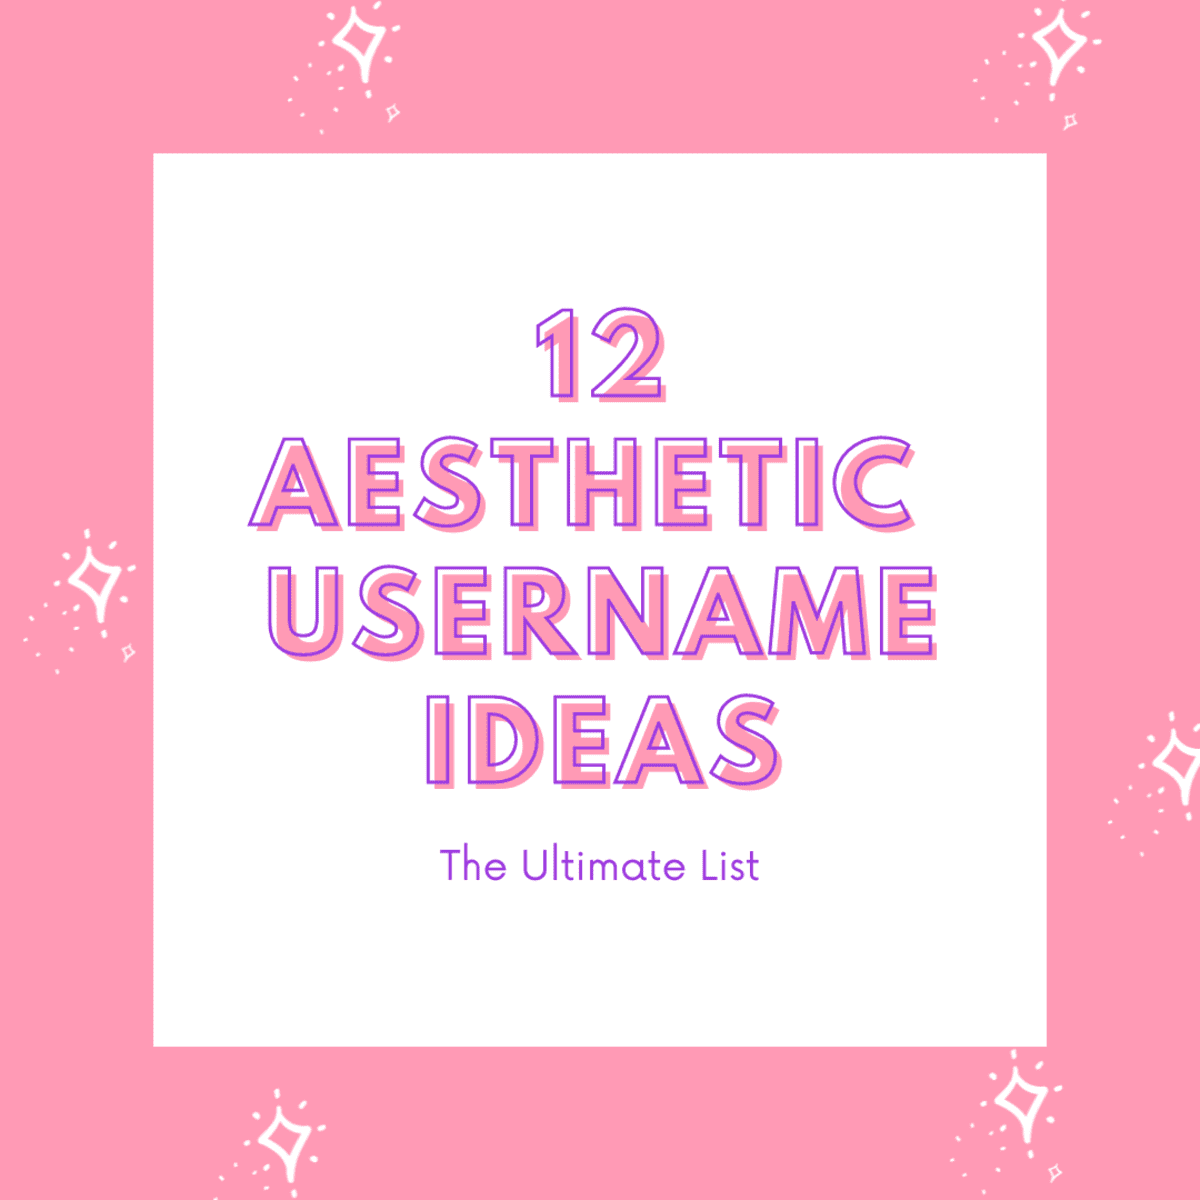 12 Aesthetic Usernames Ideas: The Ultimate List - TurboFuture